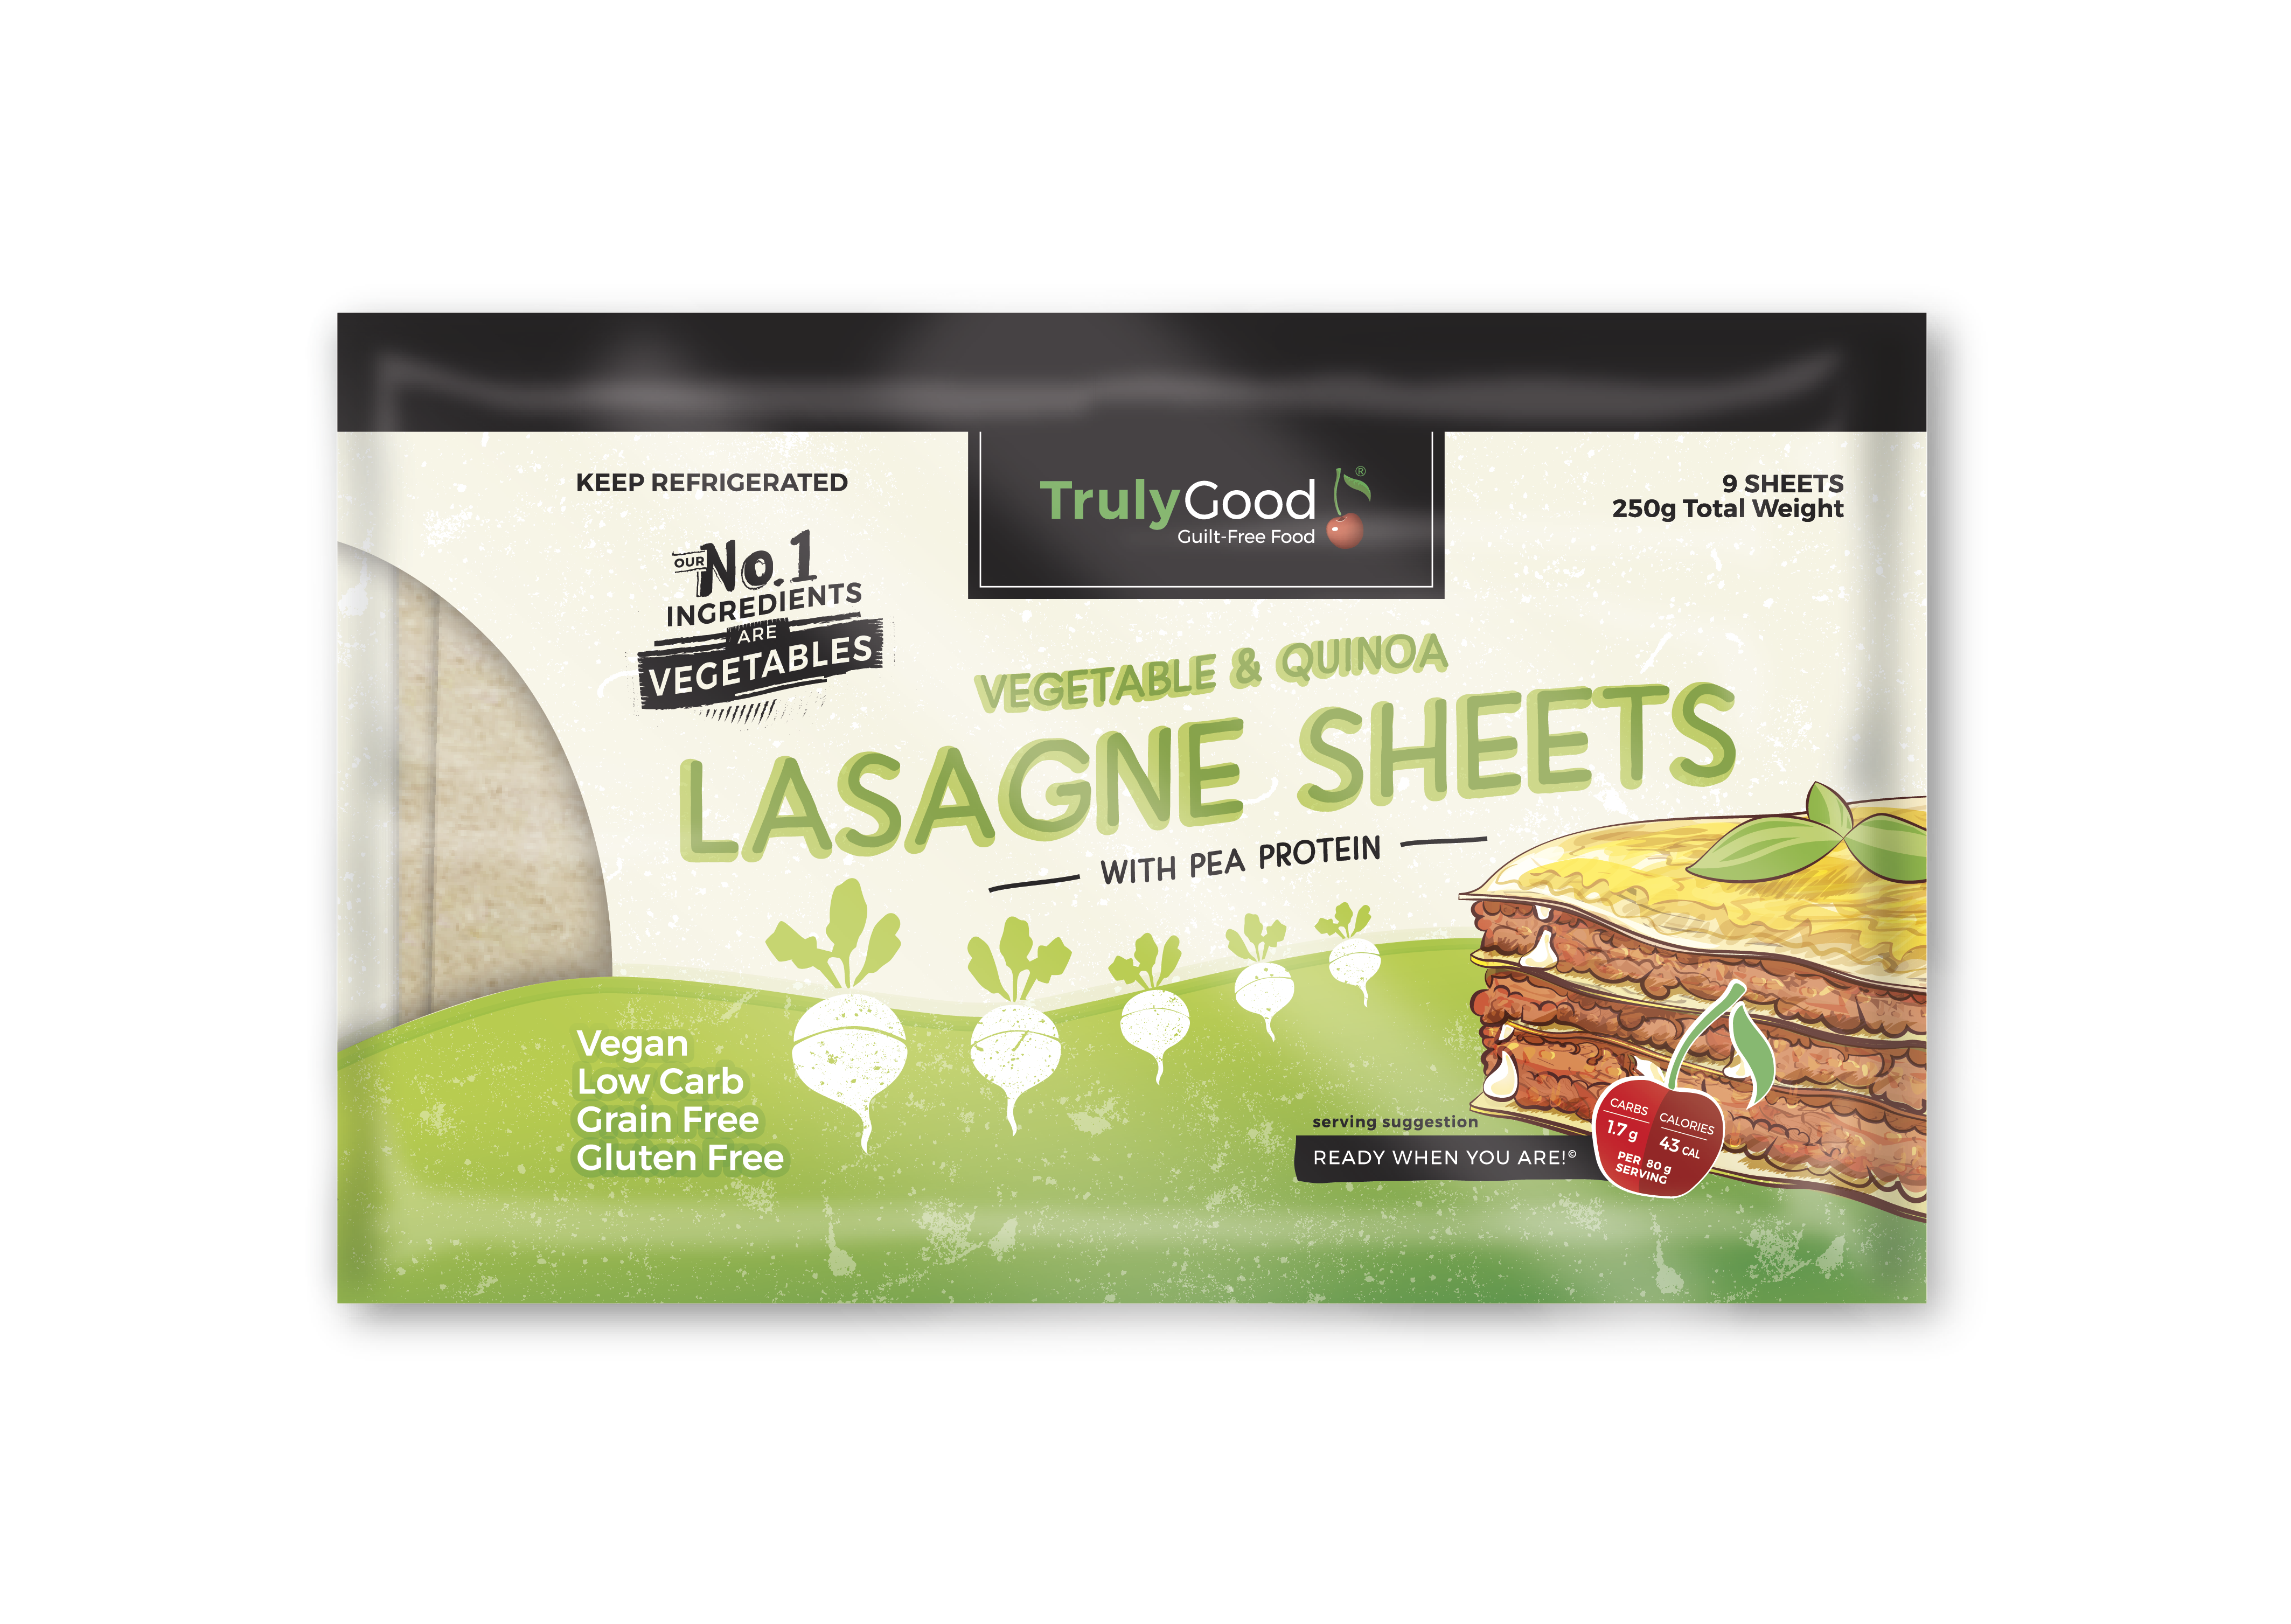 Vegetable & Quinoa Lasagne Sheets: 9 sheets